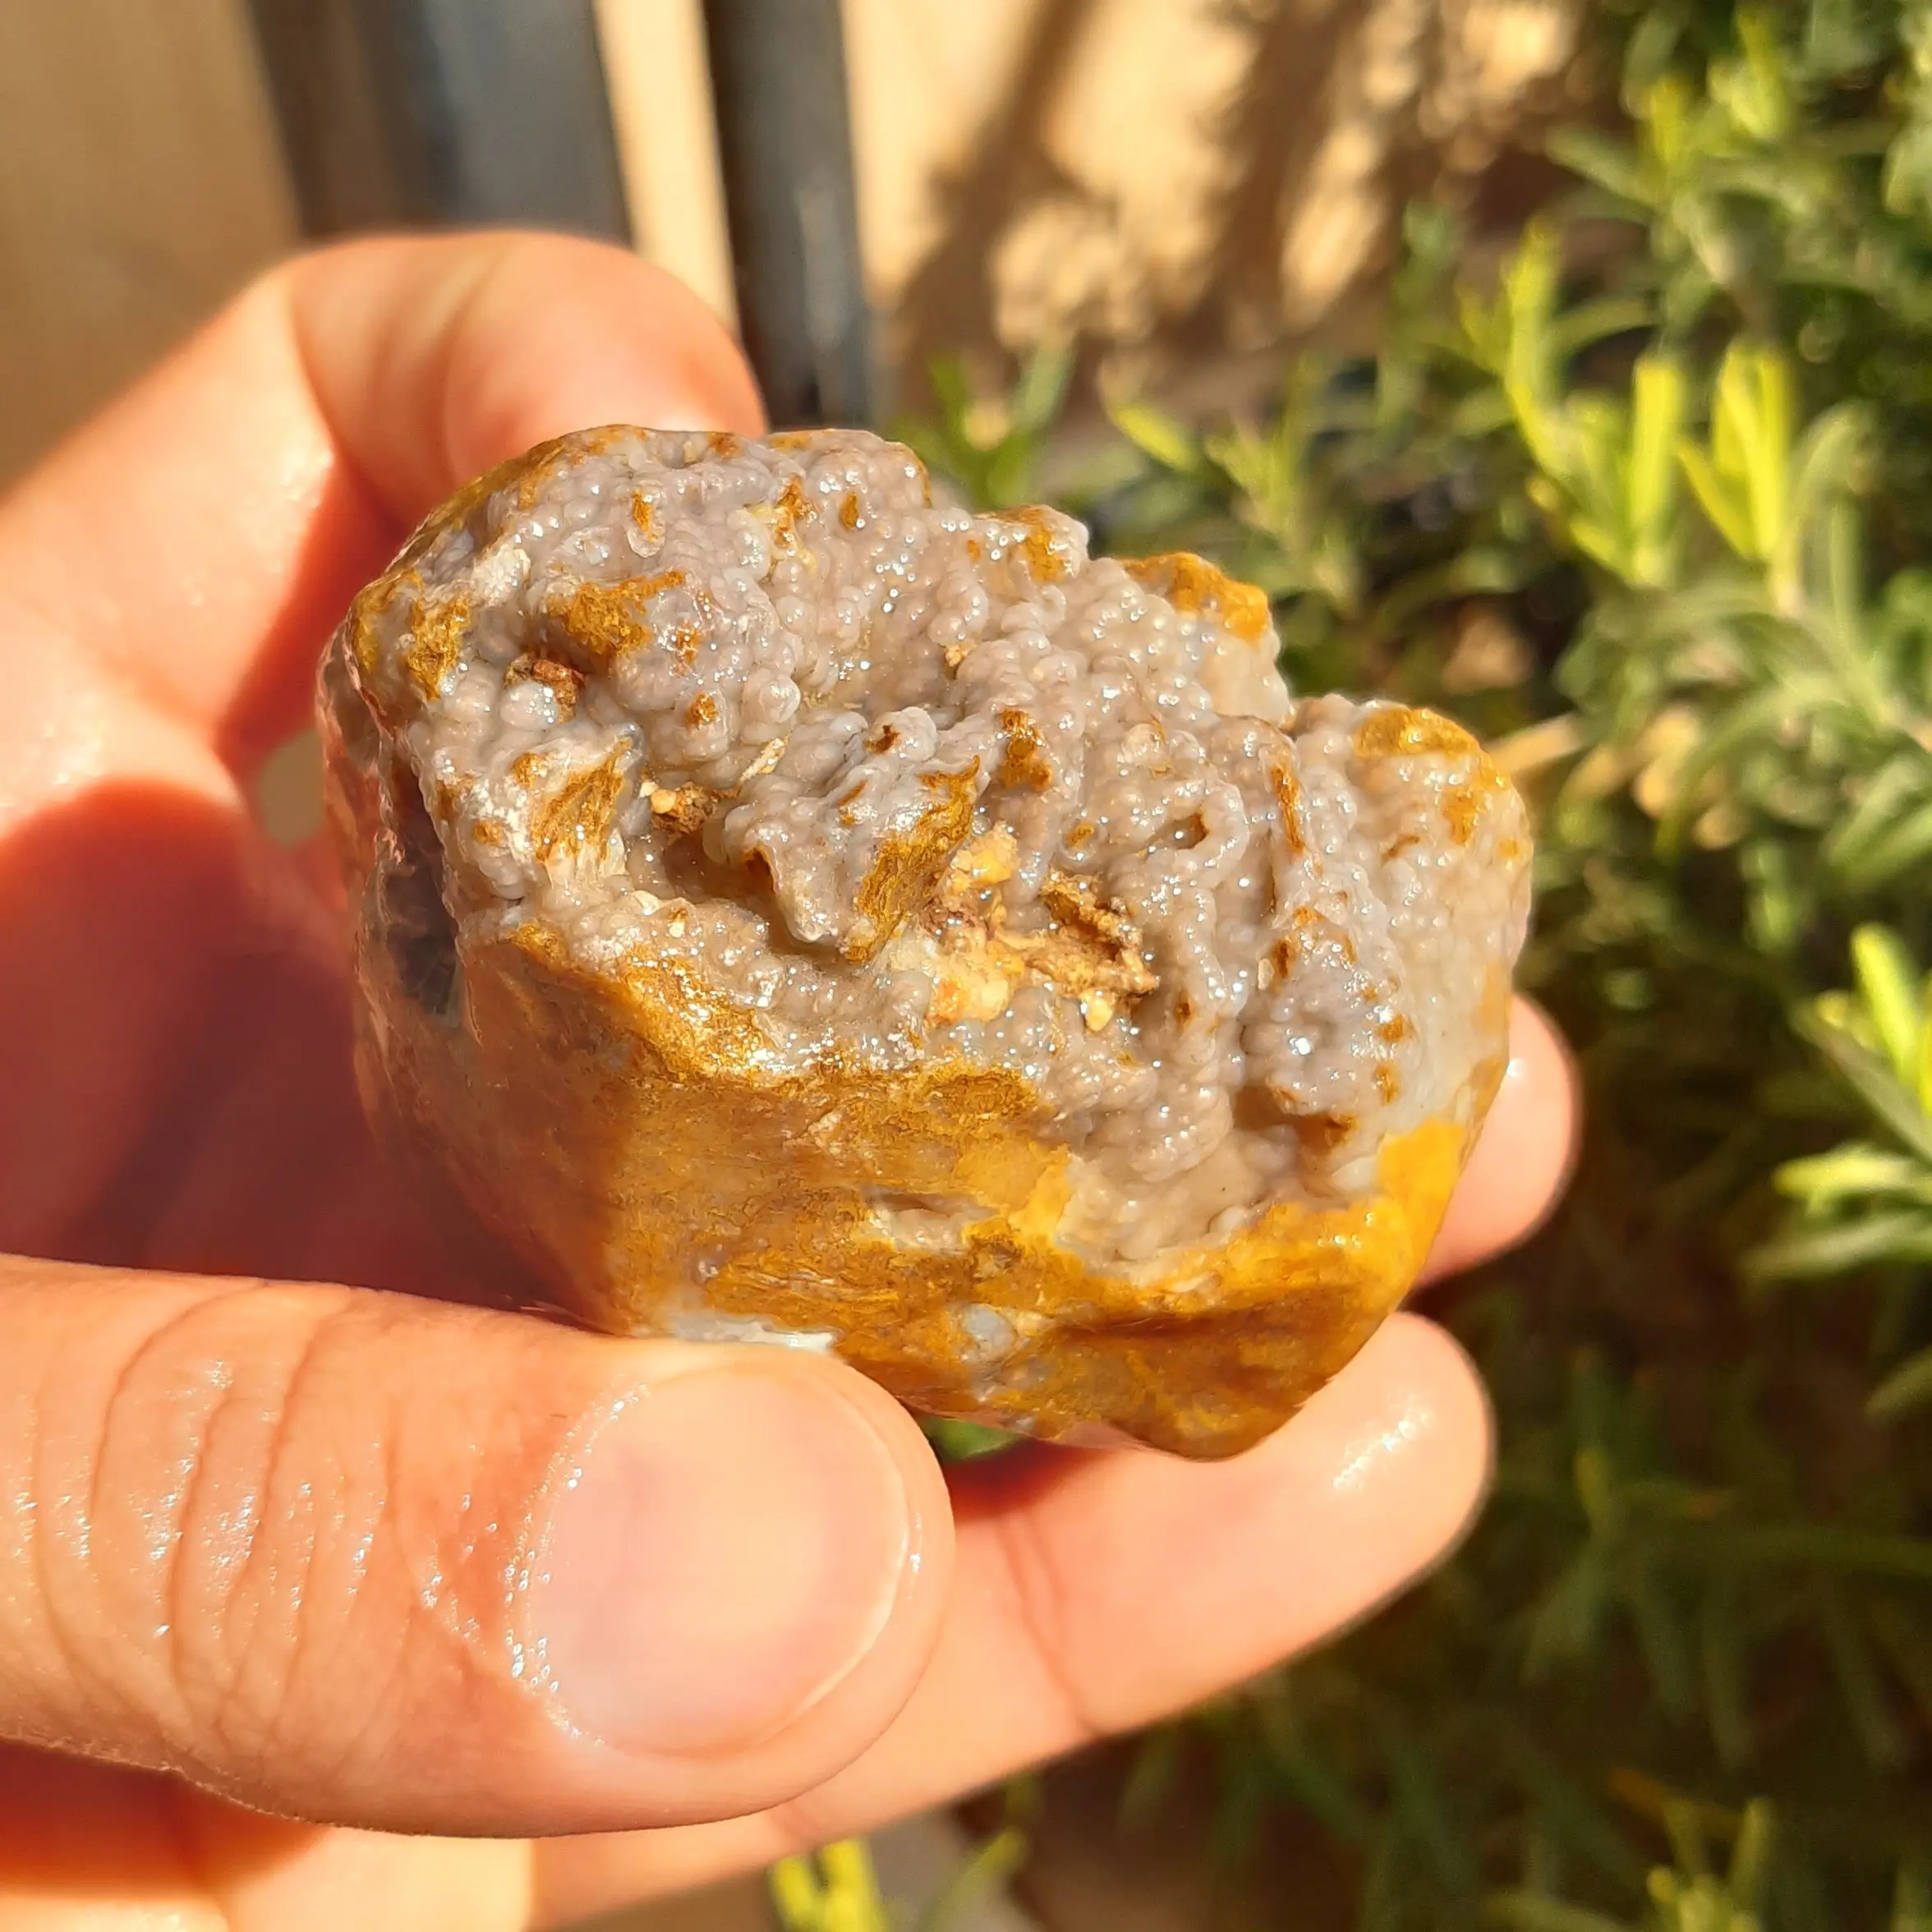 سنگ راف عقیق شجر خزه ای با سطح خوشه انگوری خاص و متفاوت برش نخورده  با قابلیت ساخت نگین